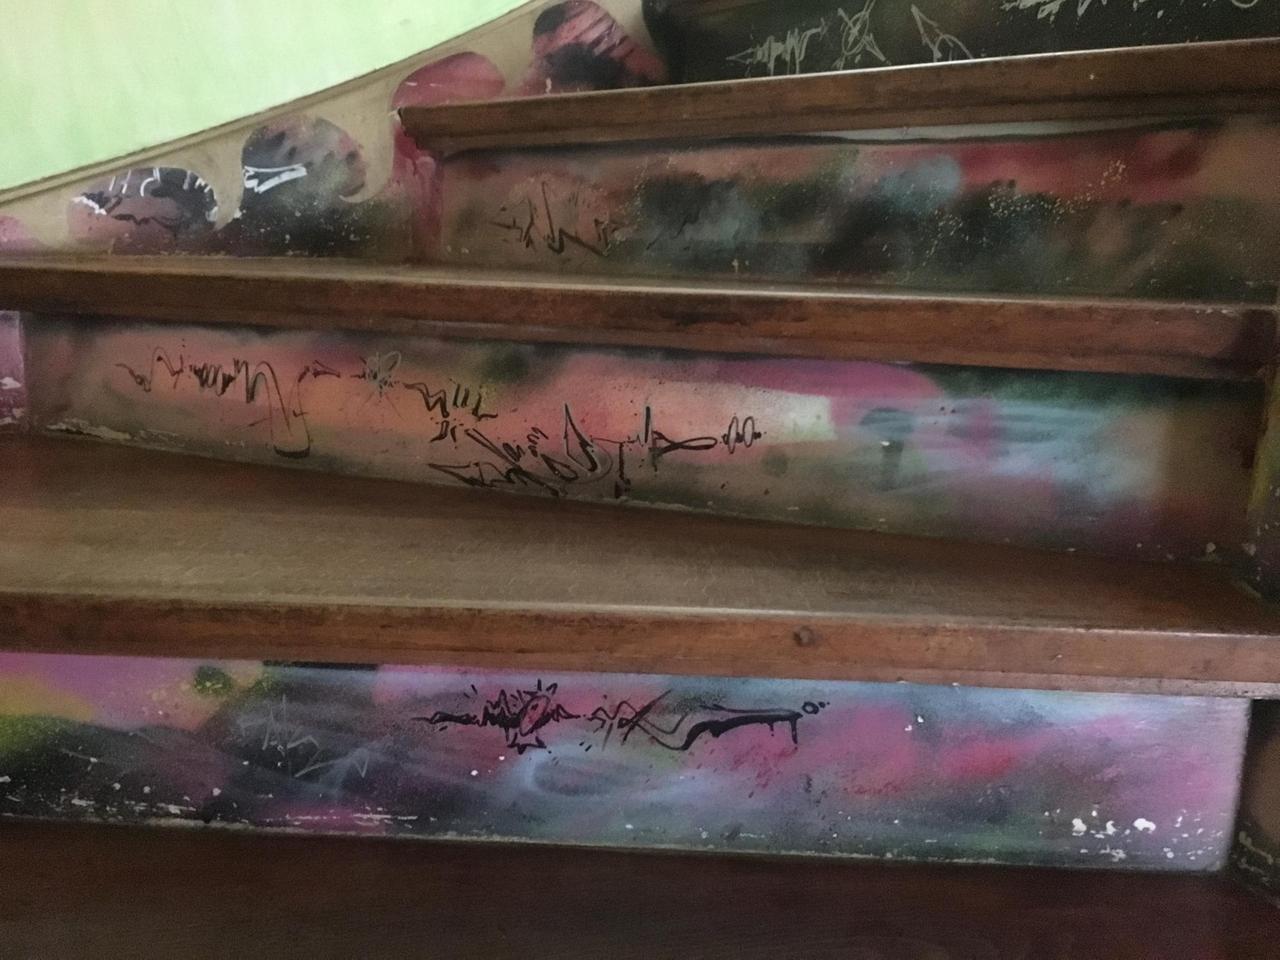 Jede einzelne Stufe der Haustreppe sind auch mit Graffitis kunstvoll gestaltet